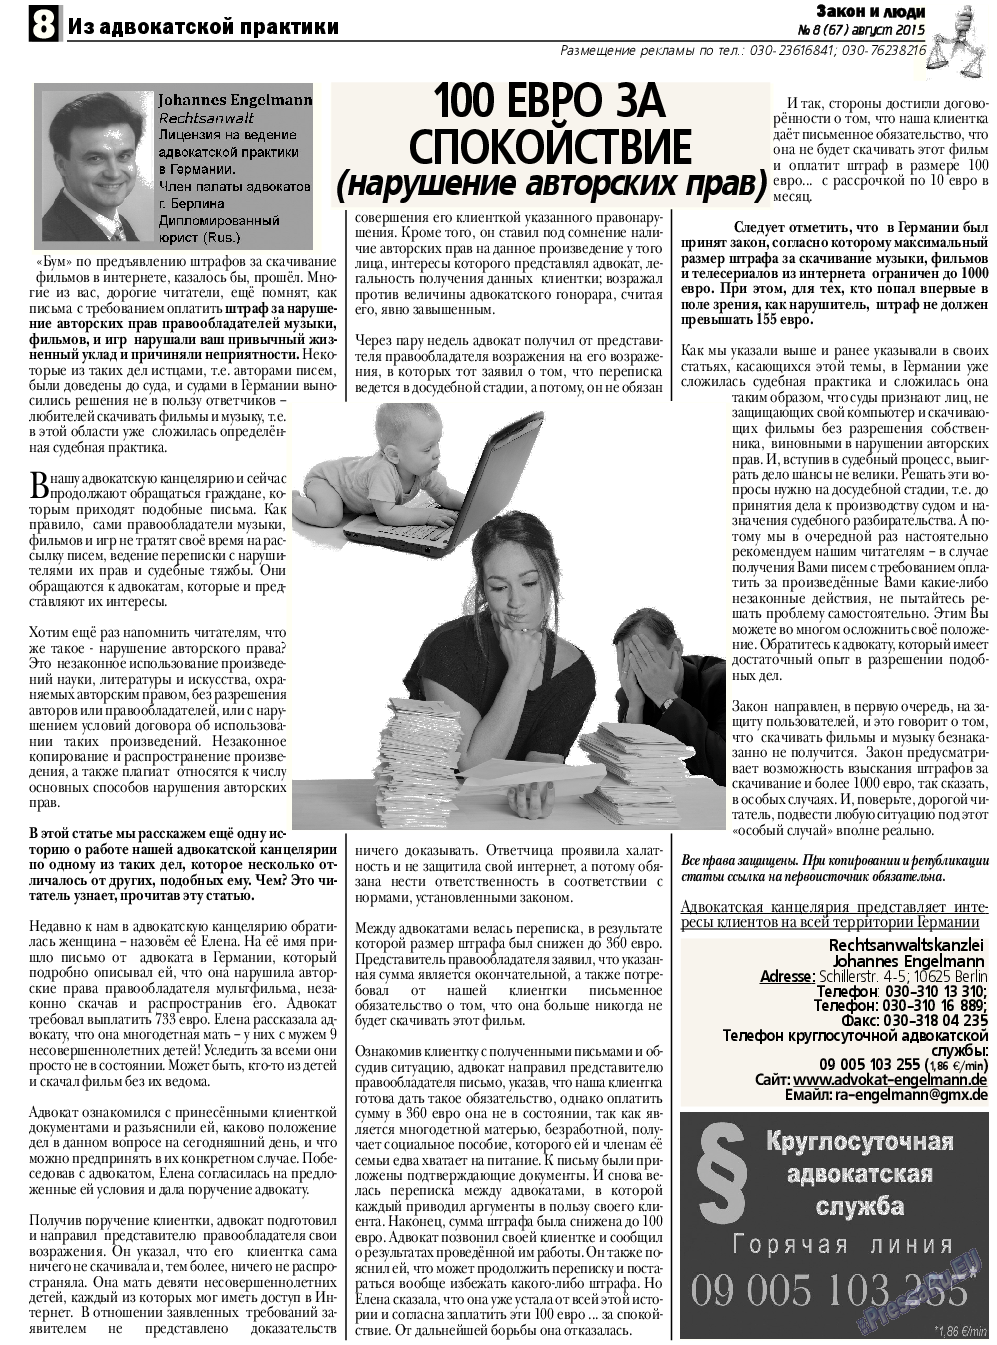 Закон и люди, газета. 2015 №8 стр.8